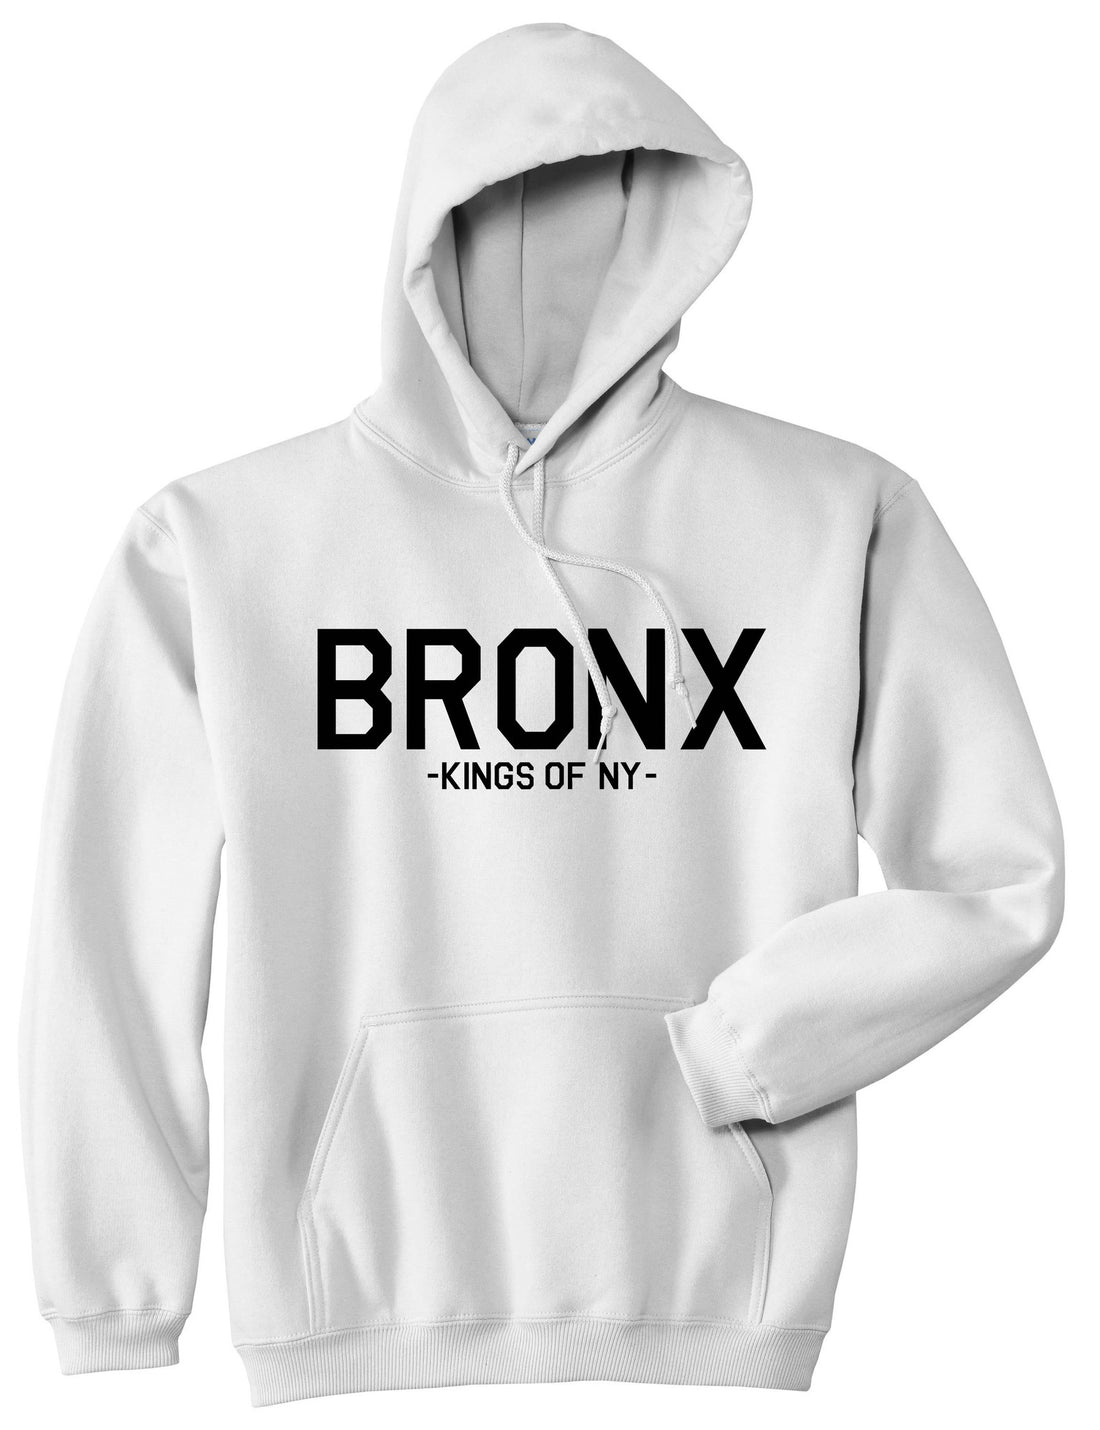 BRONX Boro Borough New York Pullover Hoodie Hoody in White